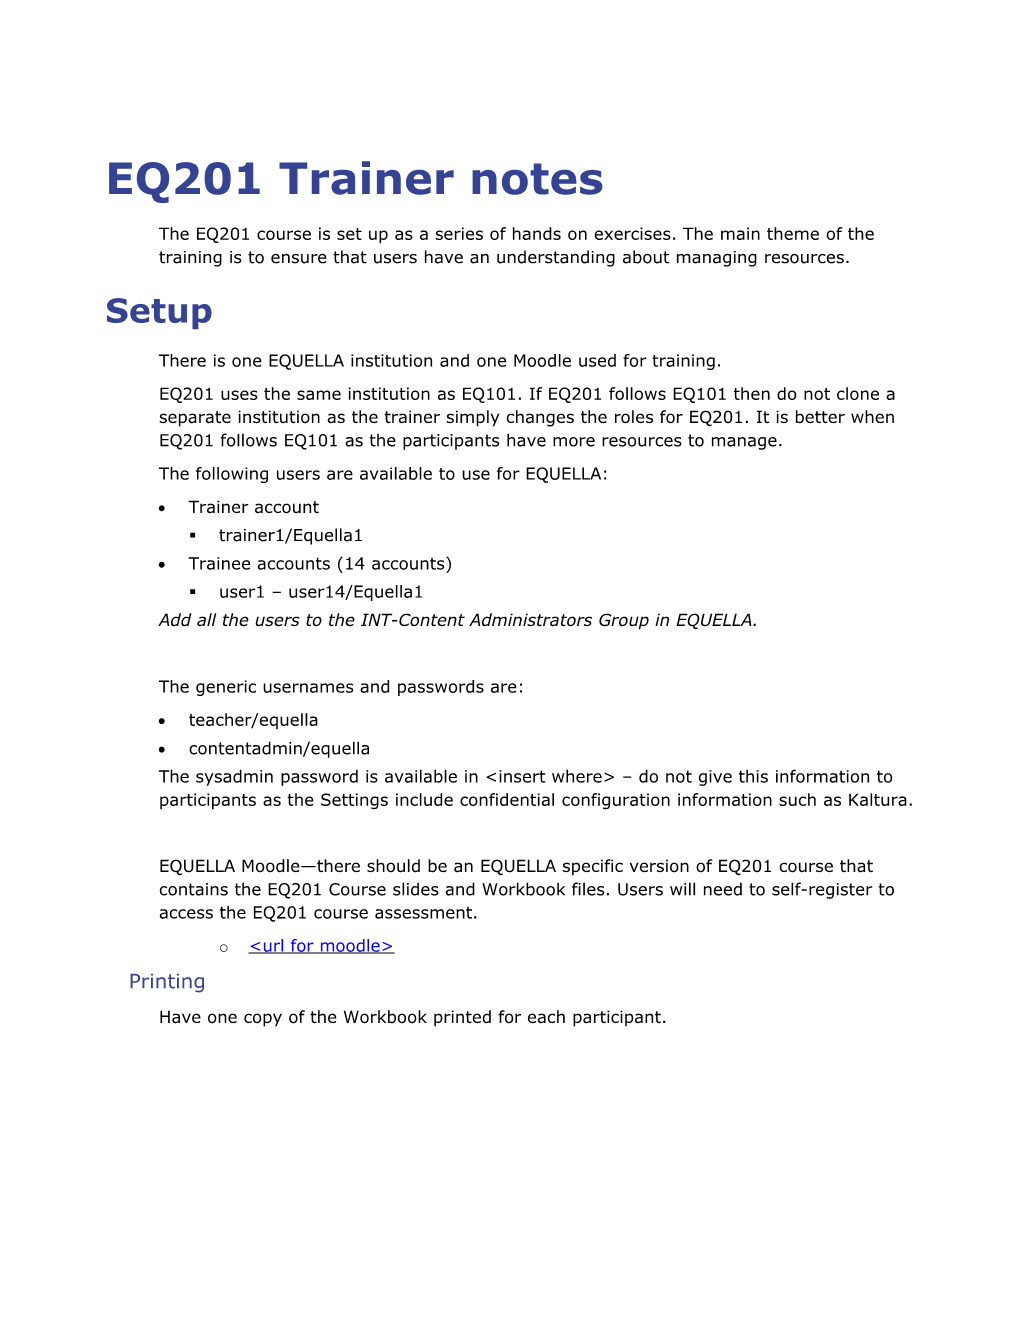 EQ201 Trainer Notes